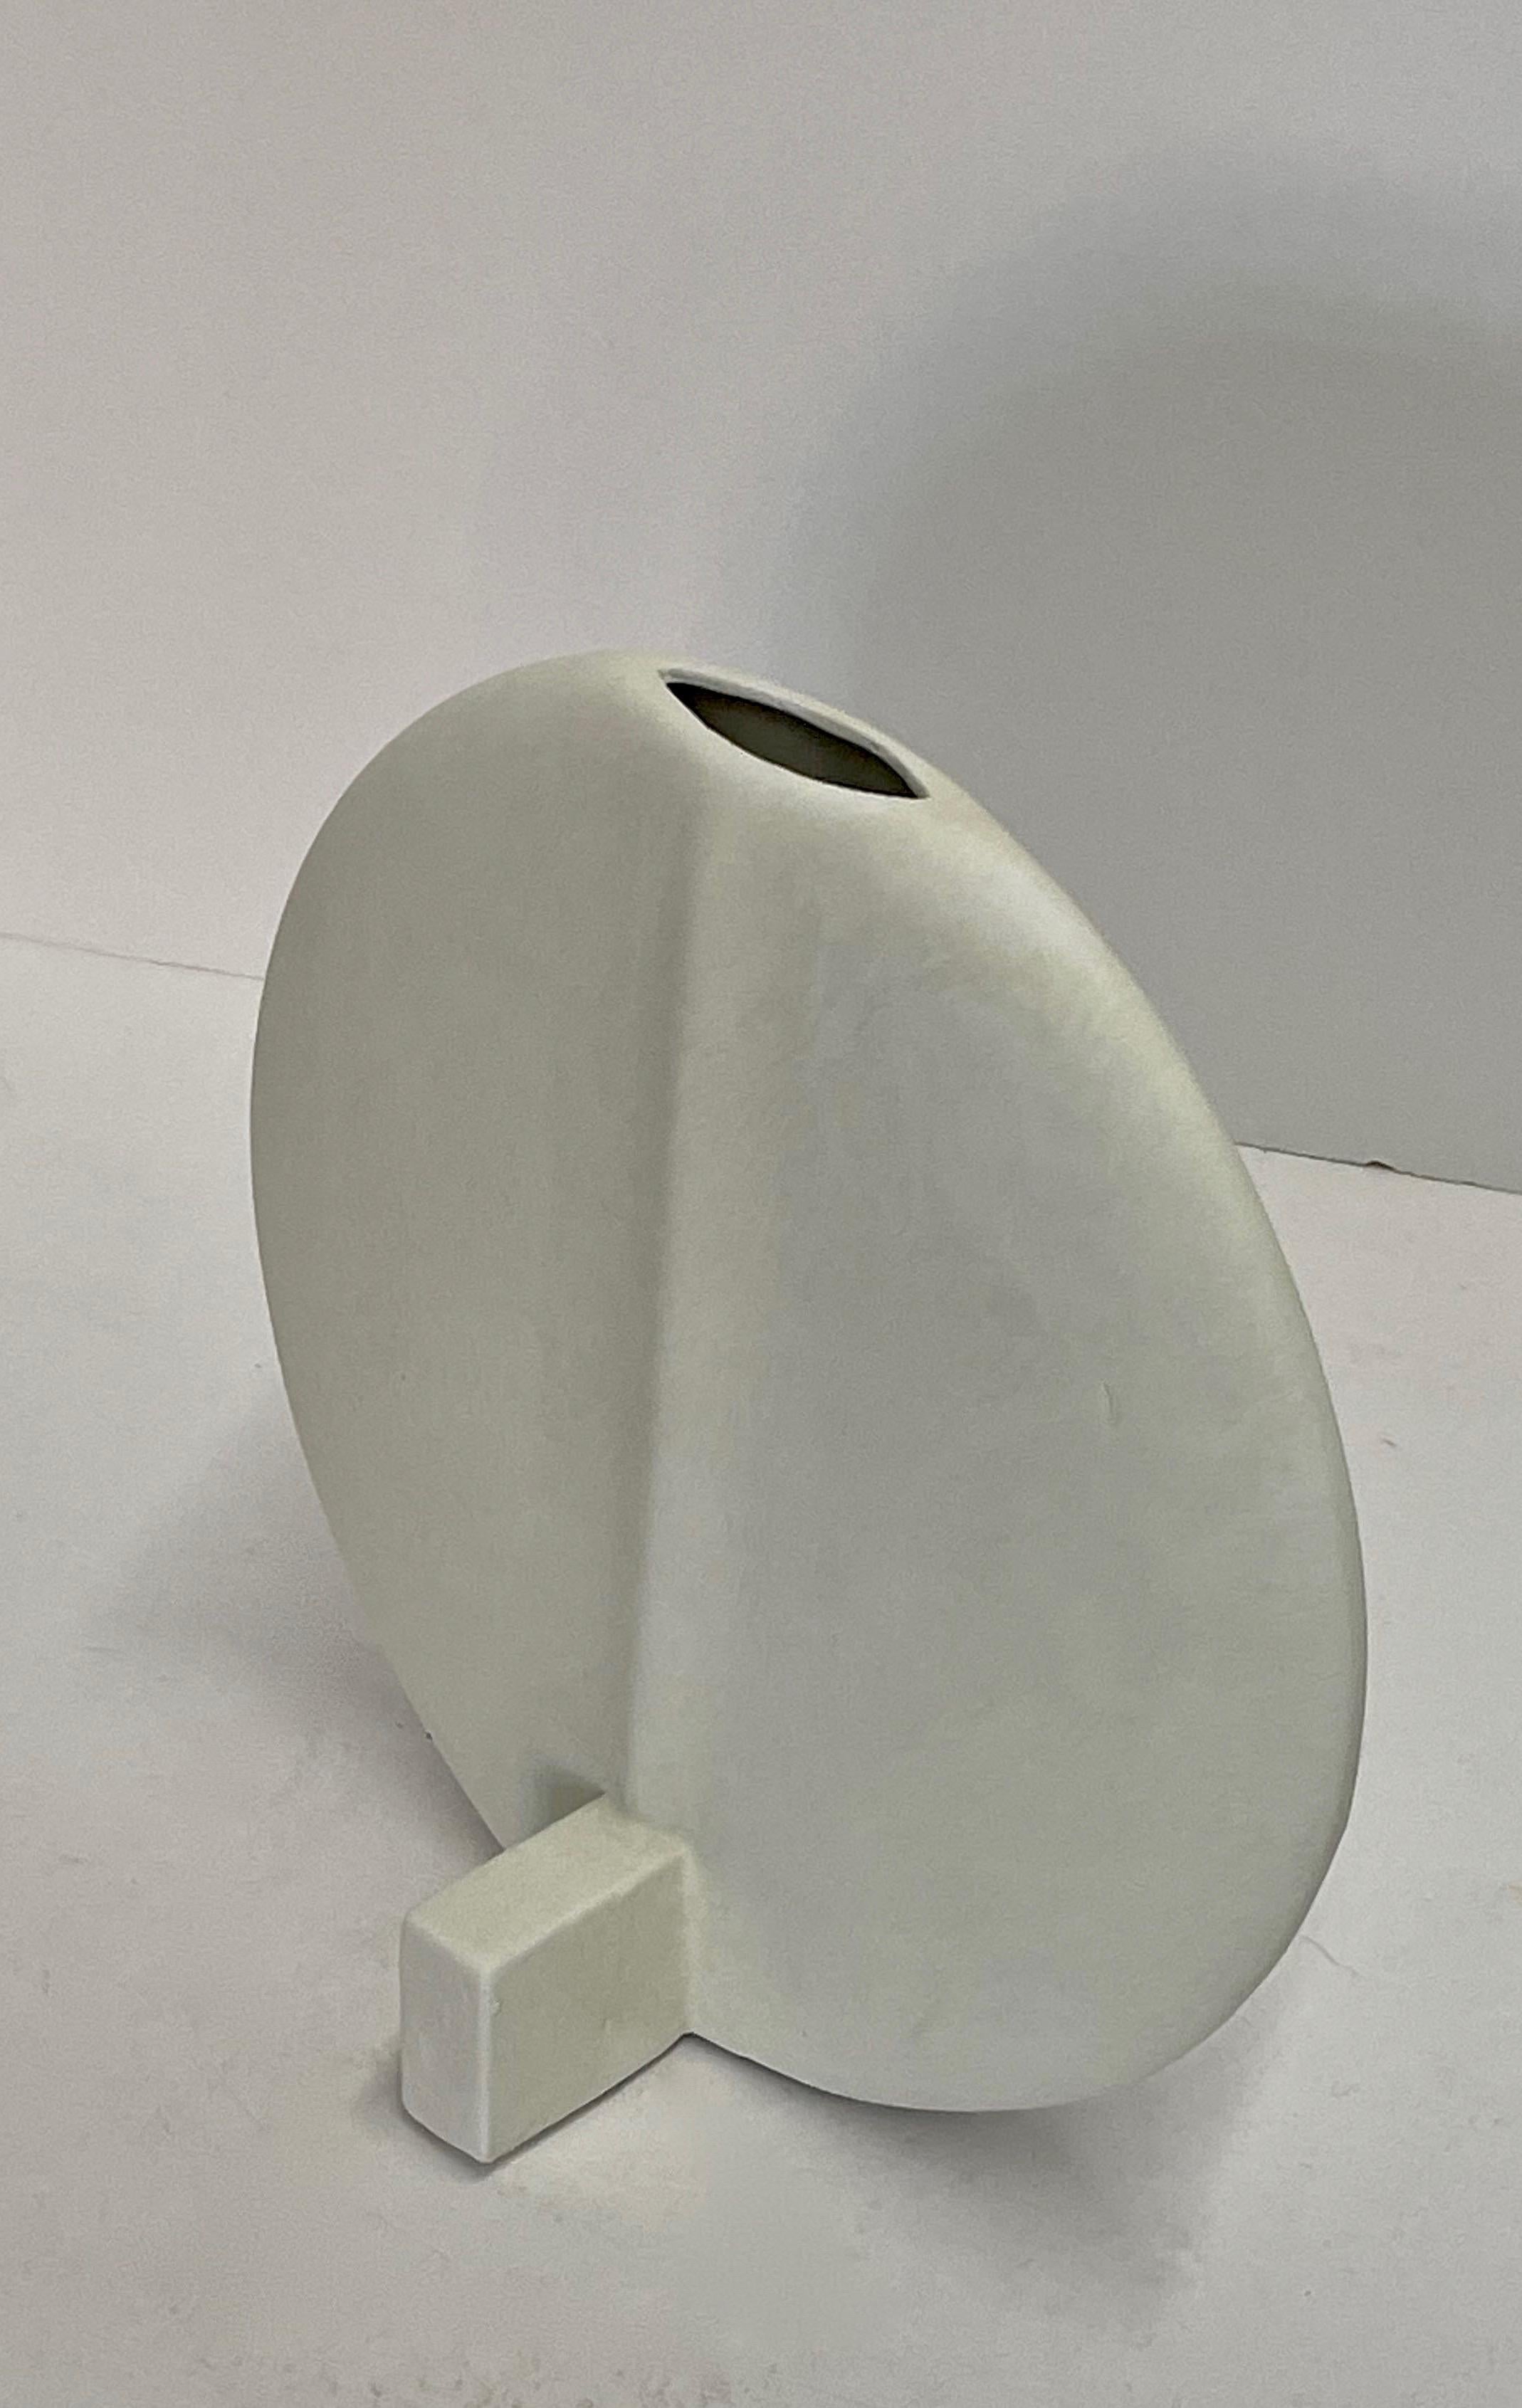 Vase miniature en forme de disque en glaçure blanche, de conception contemporaine danoise.
Bec central.
S'assoit sur son propre support.
Disponible dans d'autres tailles en gris foncé.